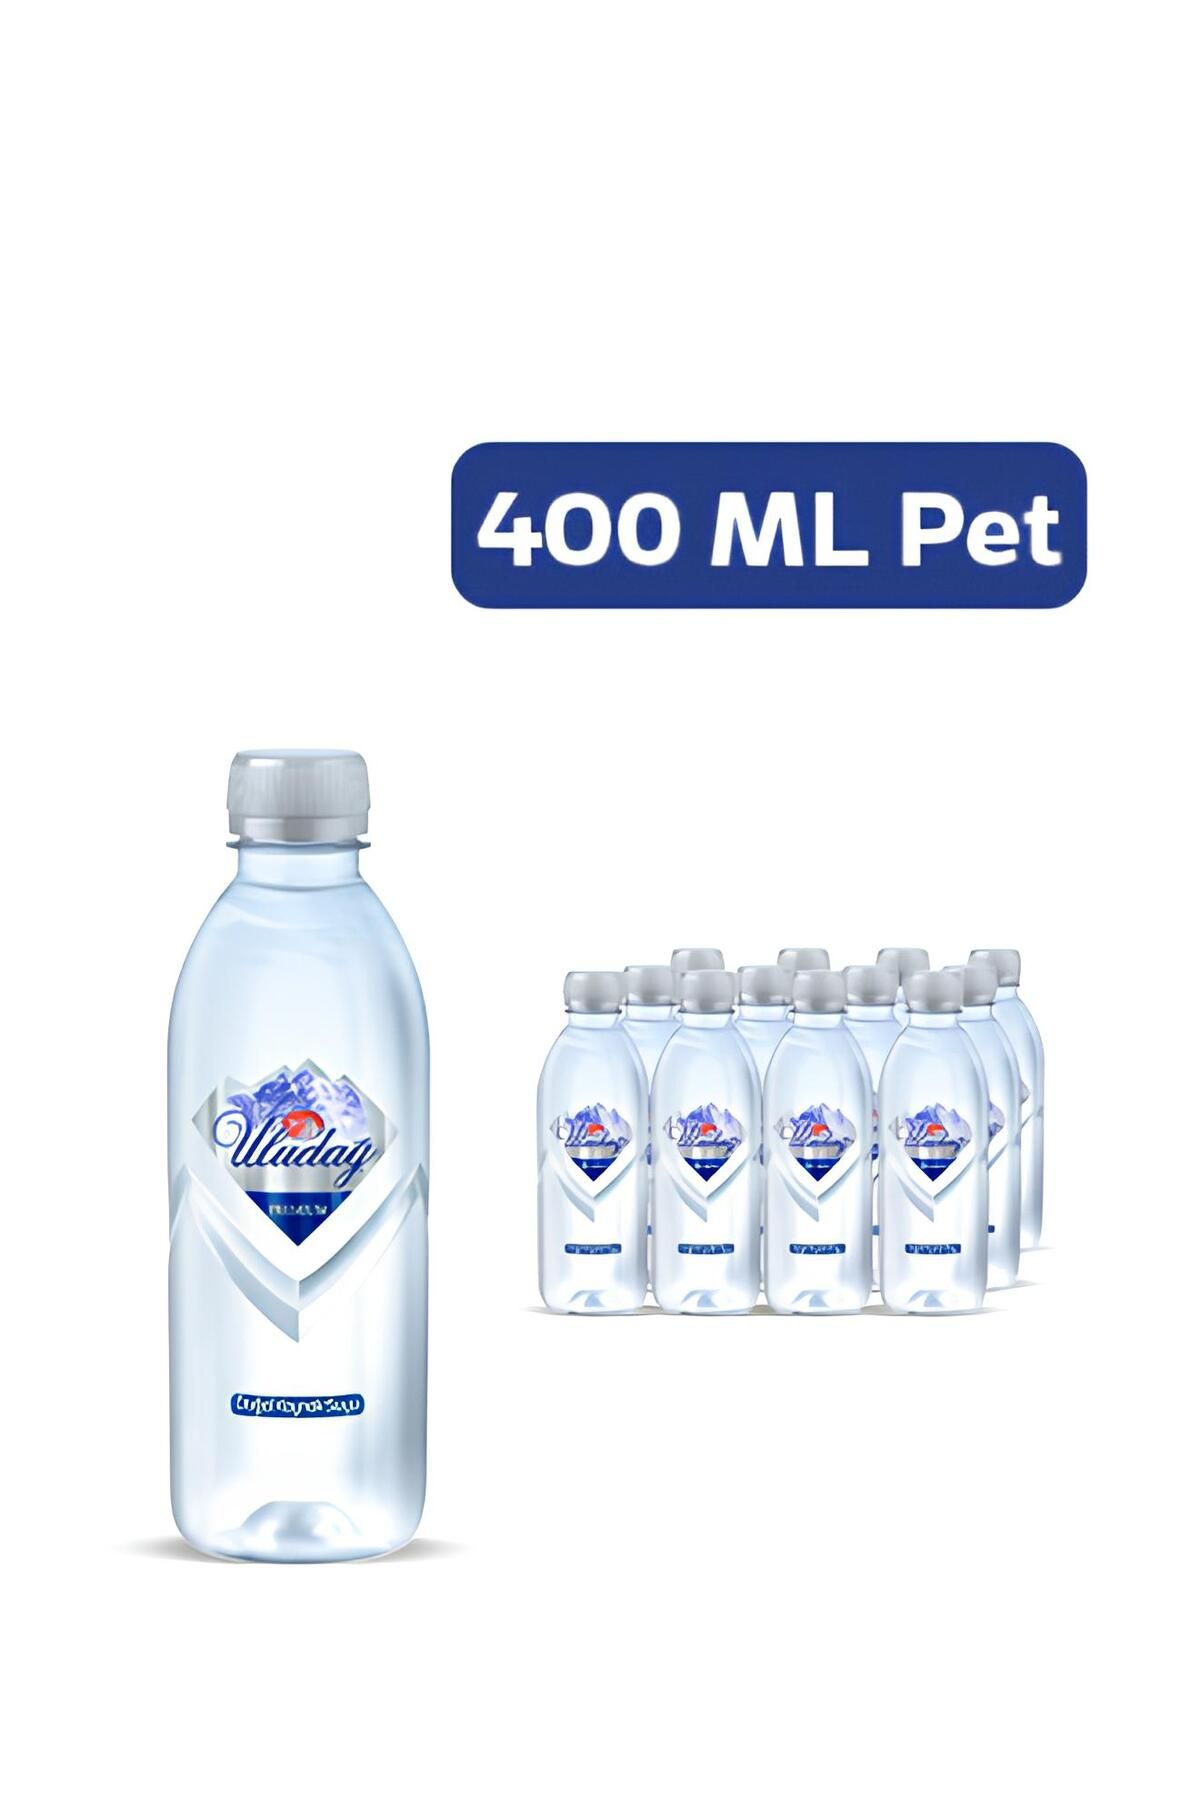 Uludağ Premium Su Premium Şişe 400 ml 12 Adet Paketsu